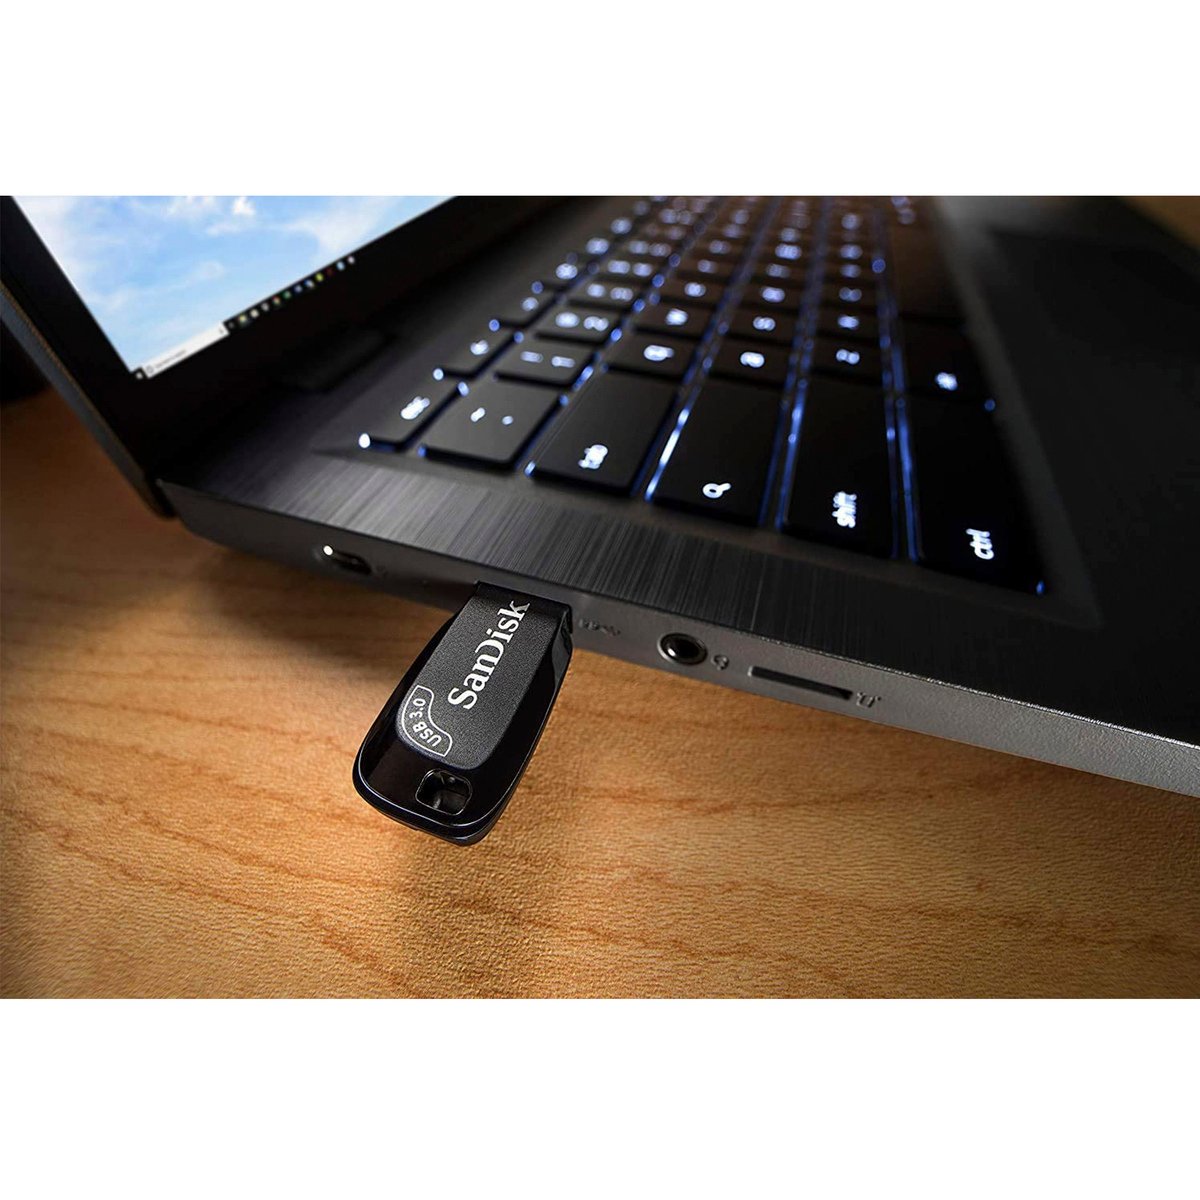 SanDisk Ultra Shift USB 3.0 Flash Drive 512GB